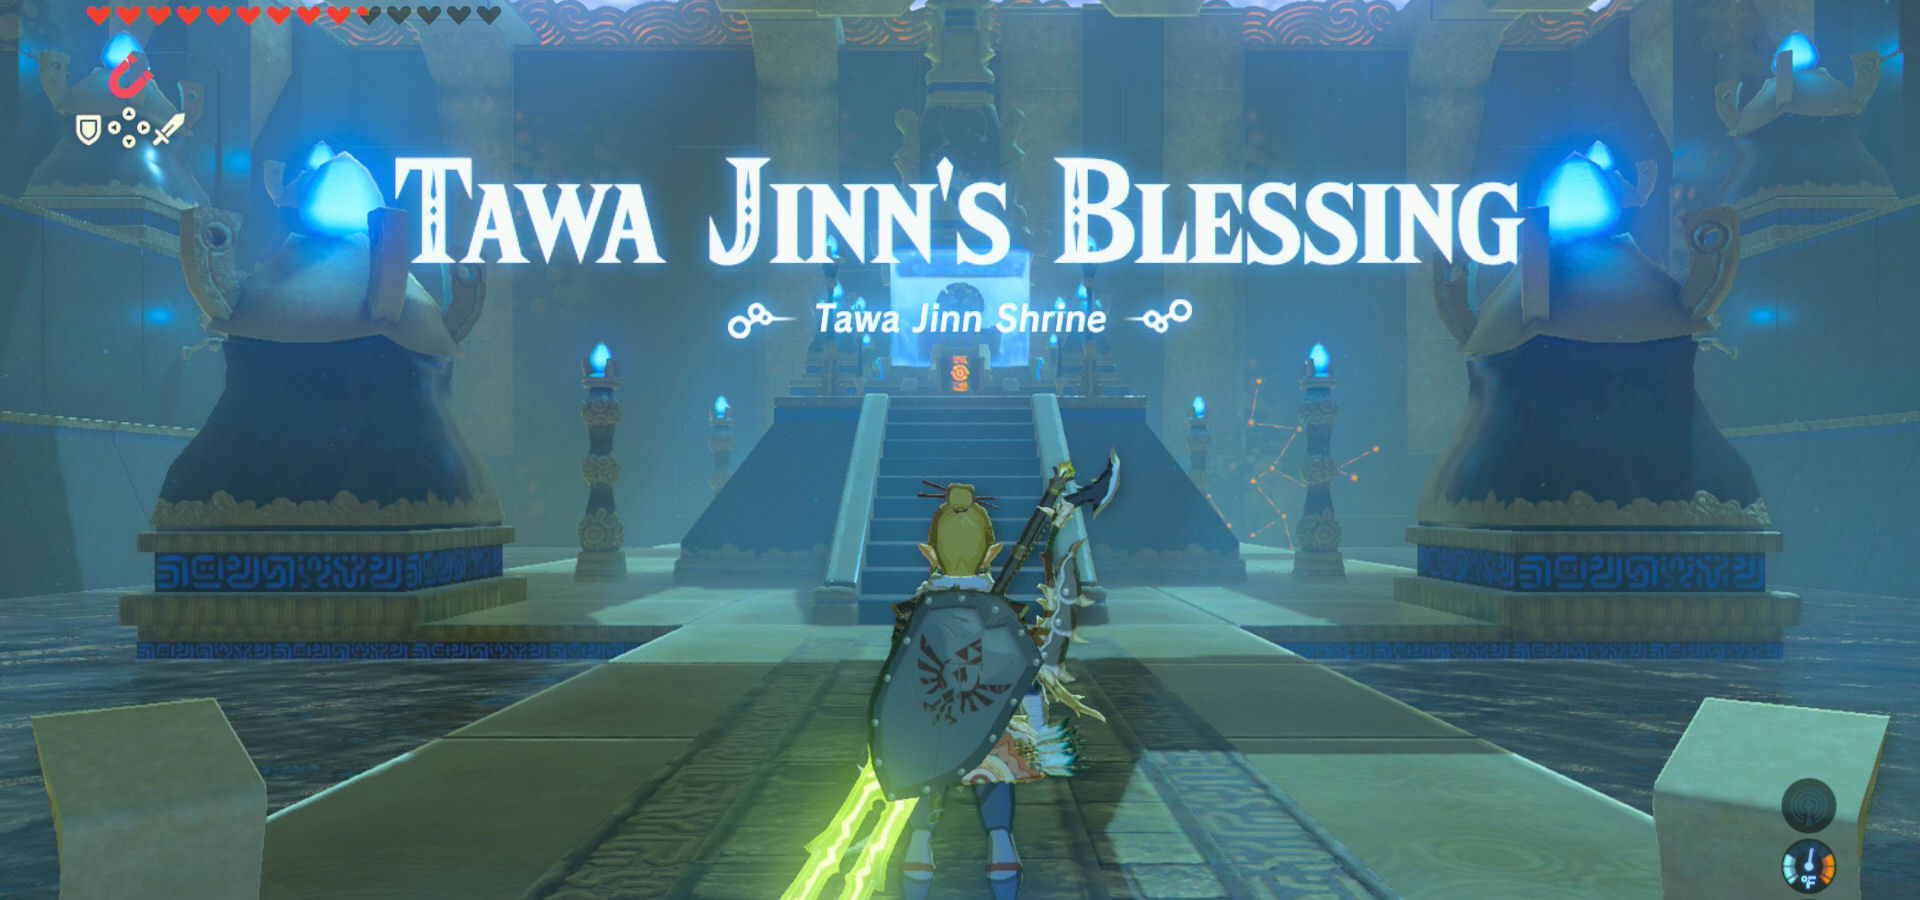 Tawa Jinn Shrine - The Legend of Zelda: Breath of the Wild Guide - IGN